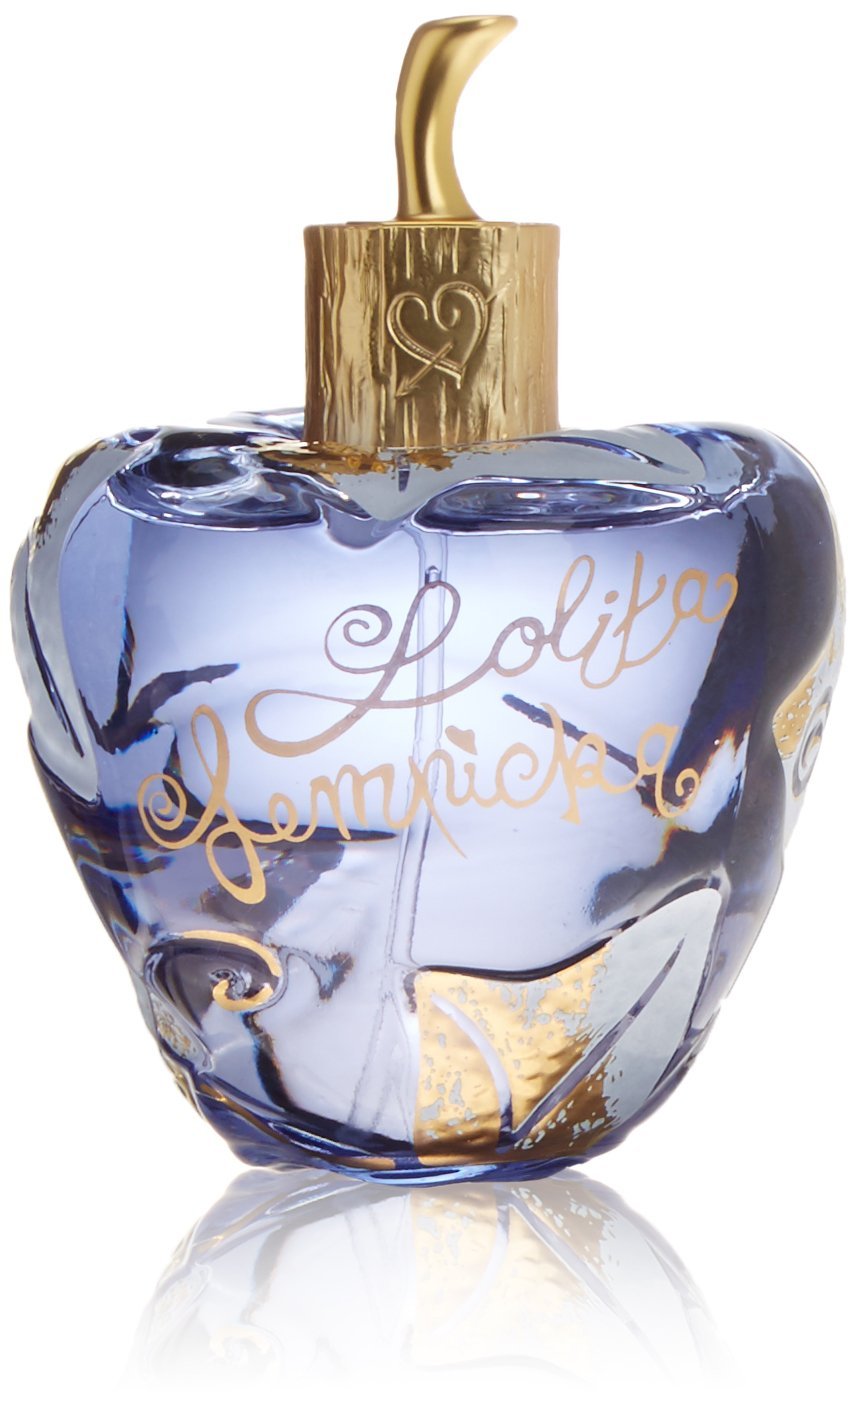 Lolita Lempicka Femme/Woman - eau de parfum - flacon vaporisateur, Parfum pas cher Amazon